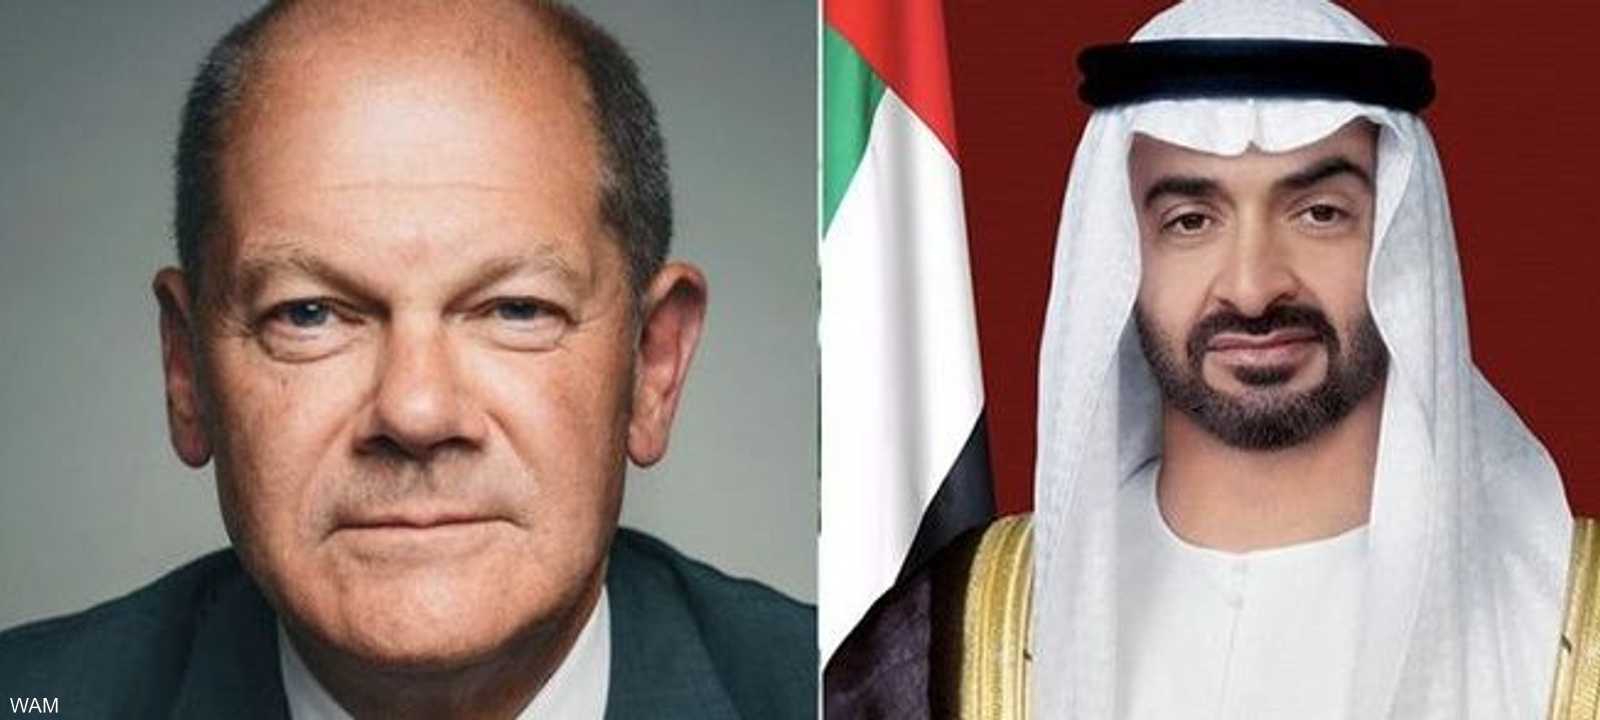 رئيس دولة الإمارات استقبل المستشار الألماني